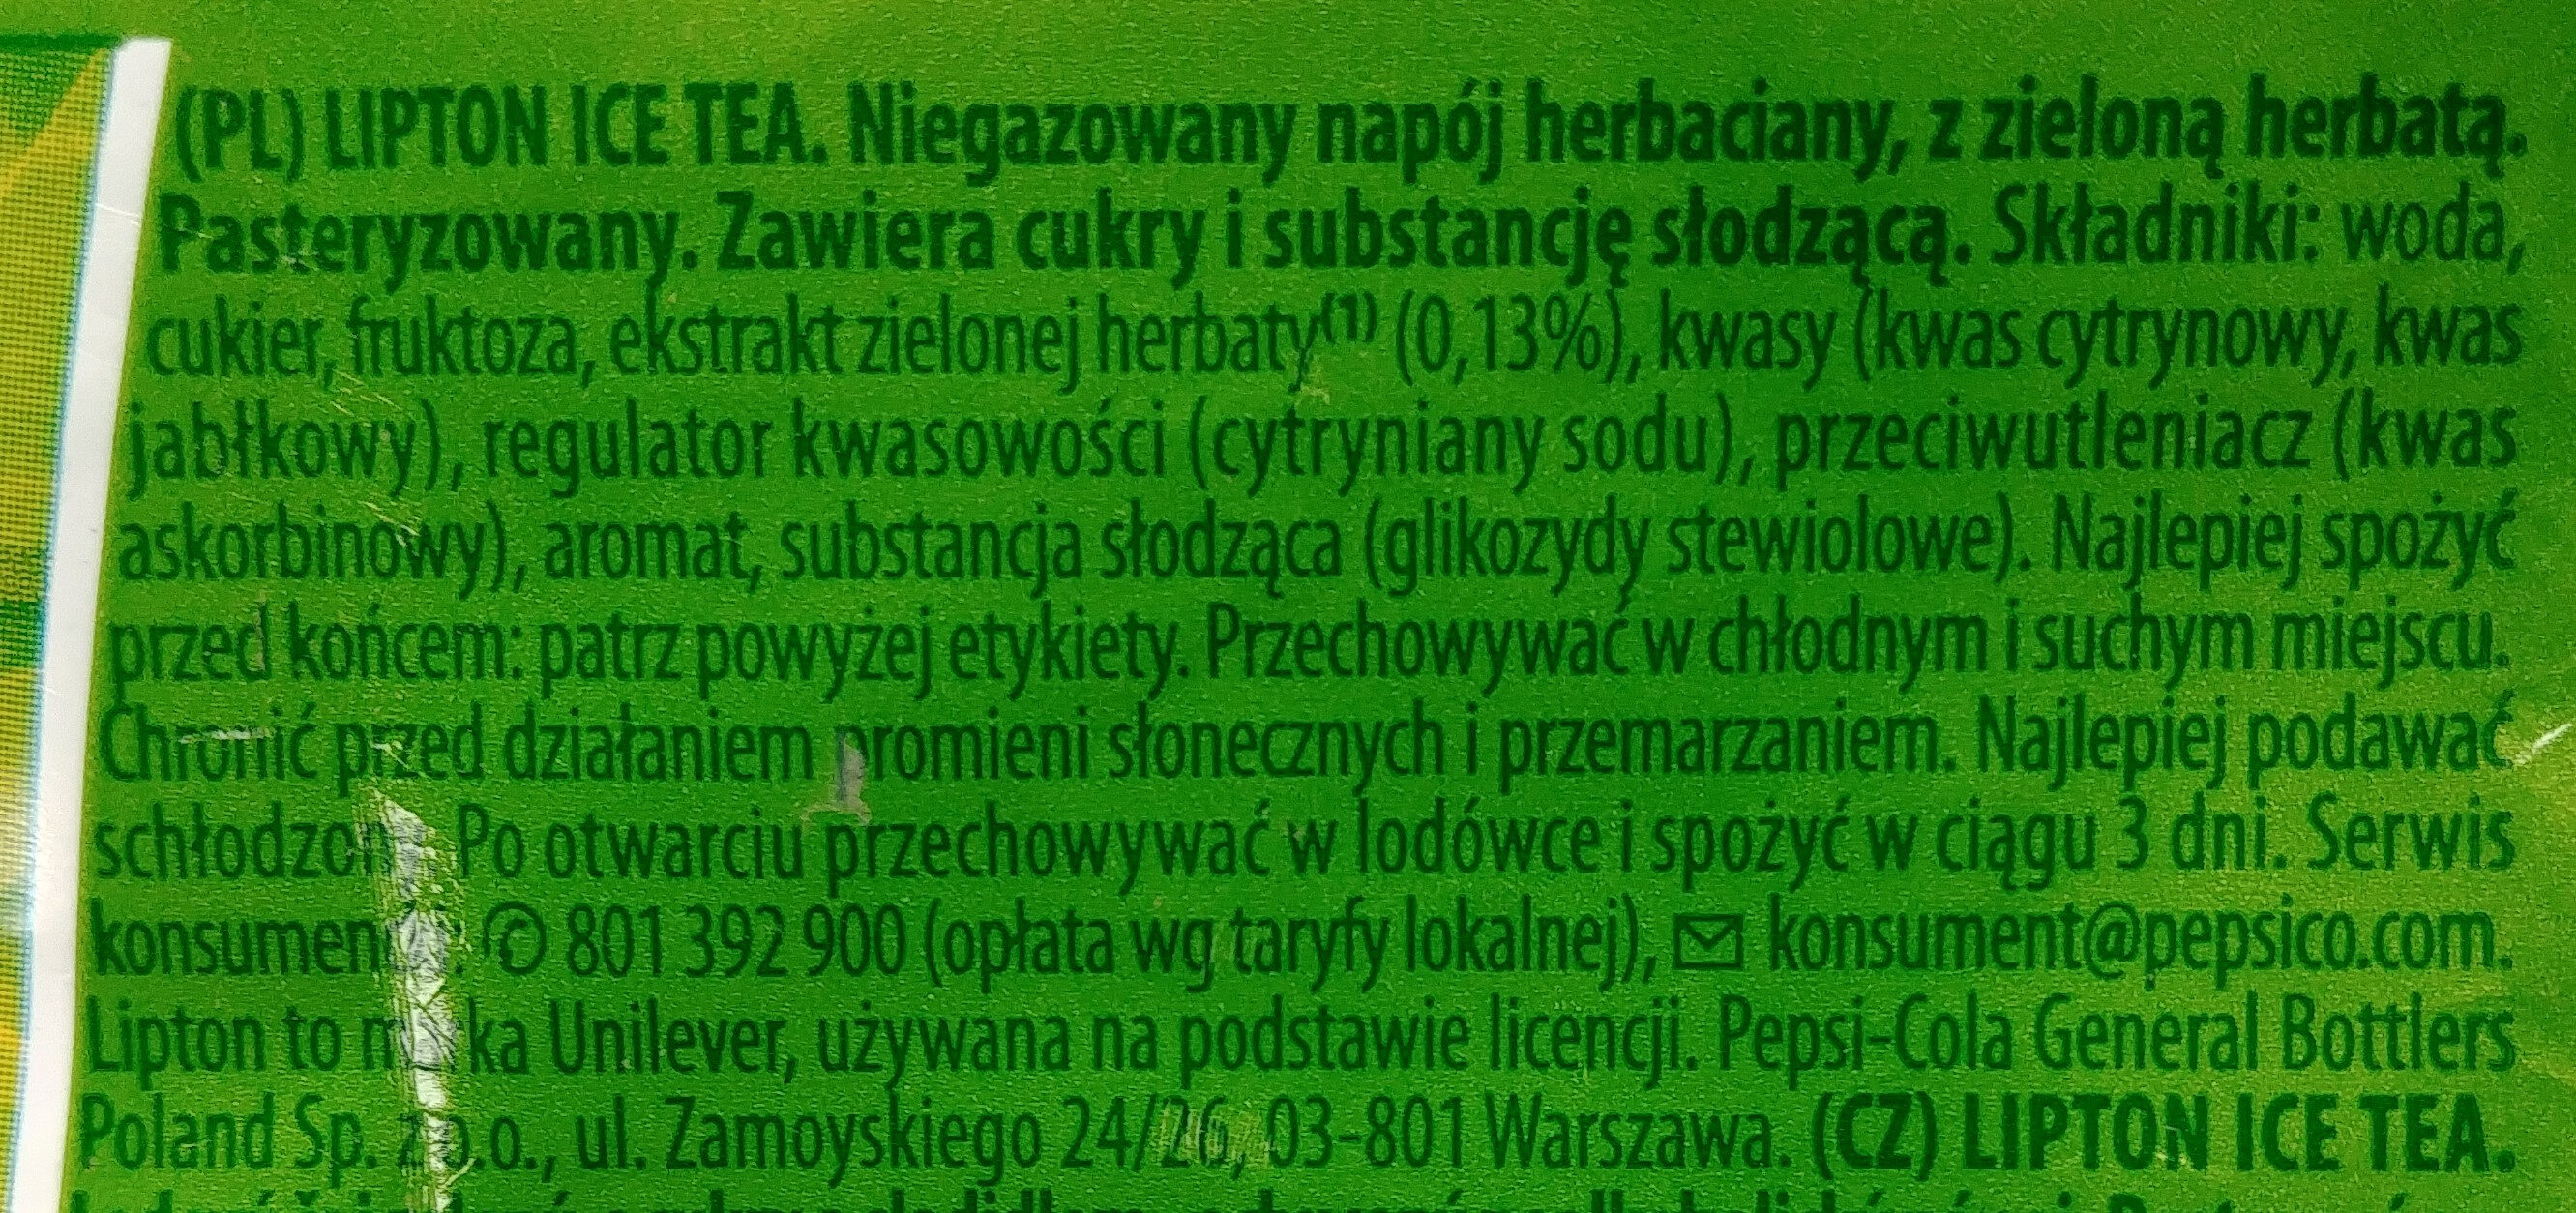 Niegazowany napój herbaciany z zieloną herbatą - Składniki